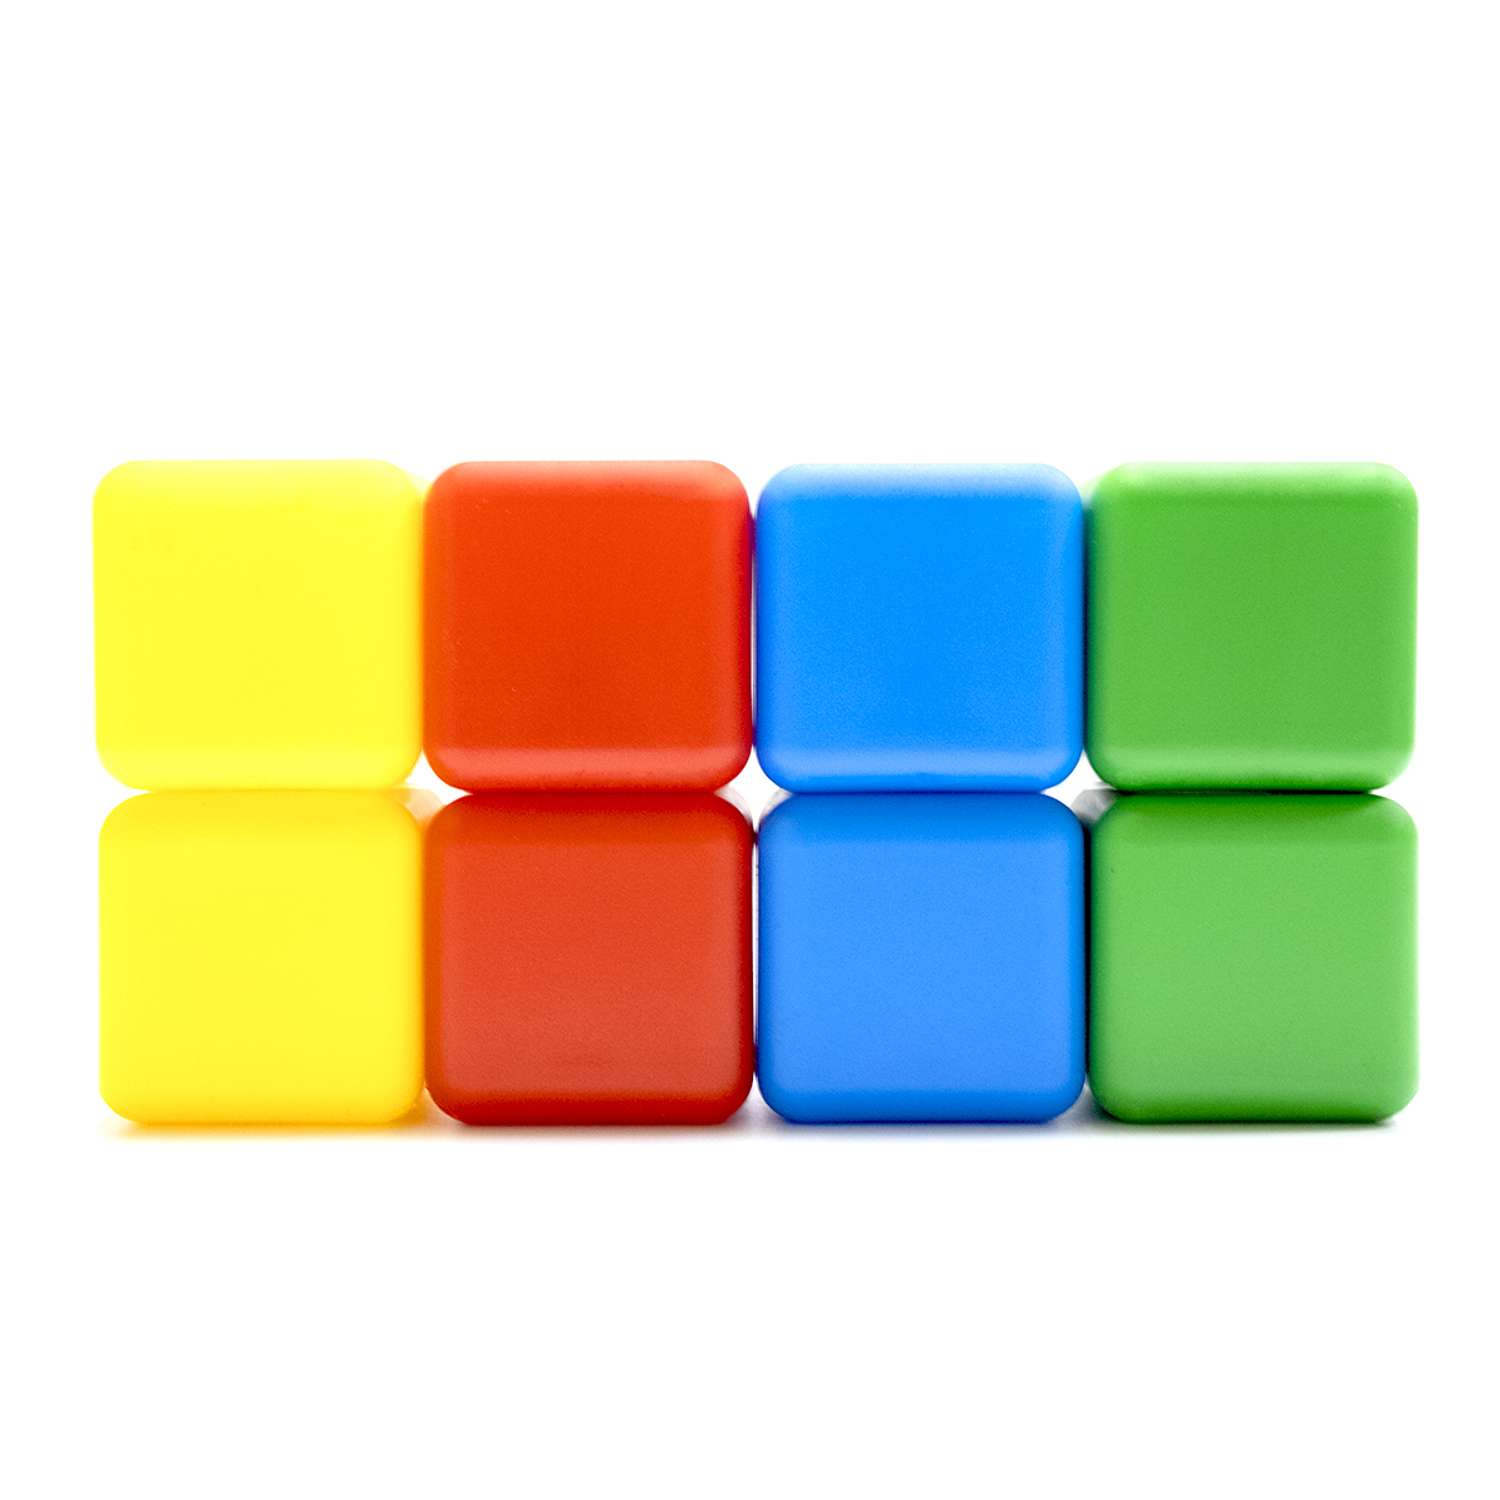 Набор кубиков KNOPA Набор кубиков Кнопа 8 шт кубик 7х7 см - фото 1